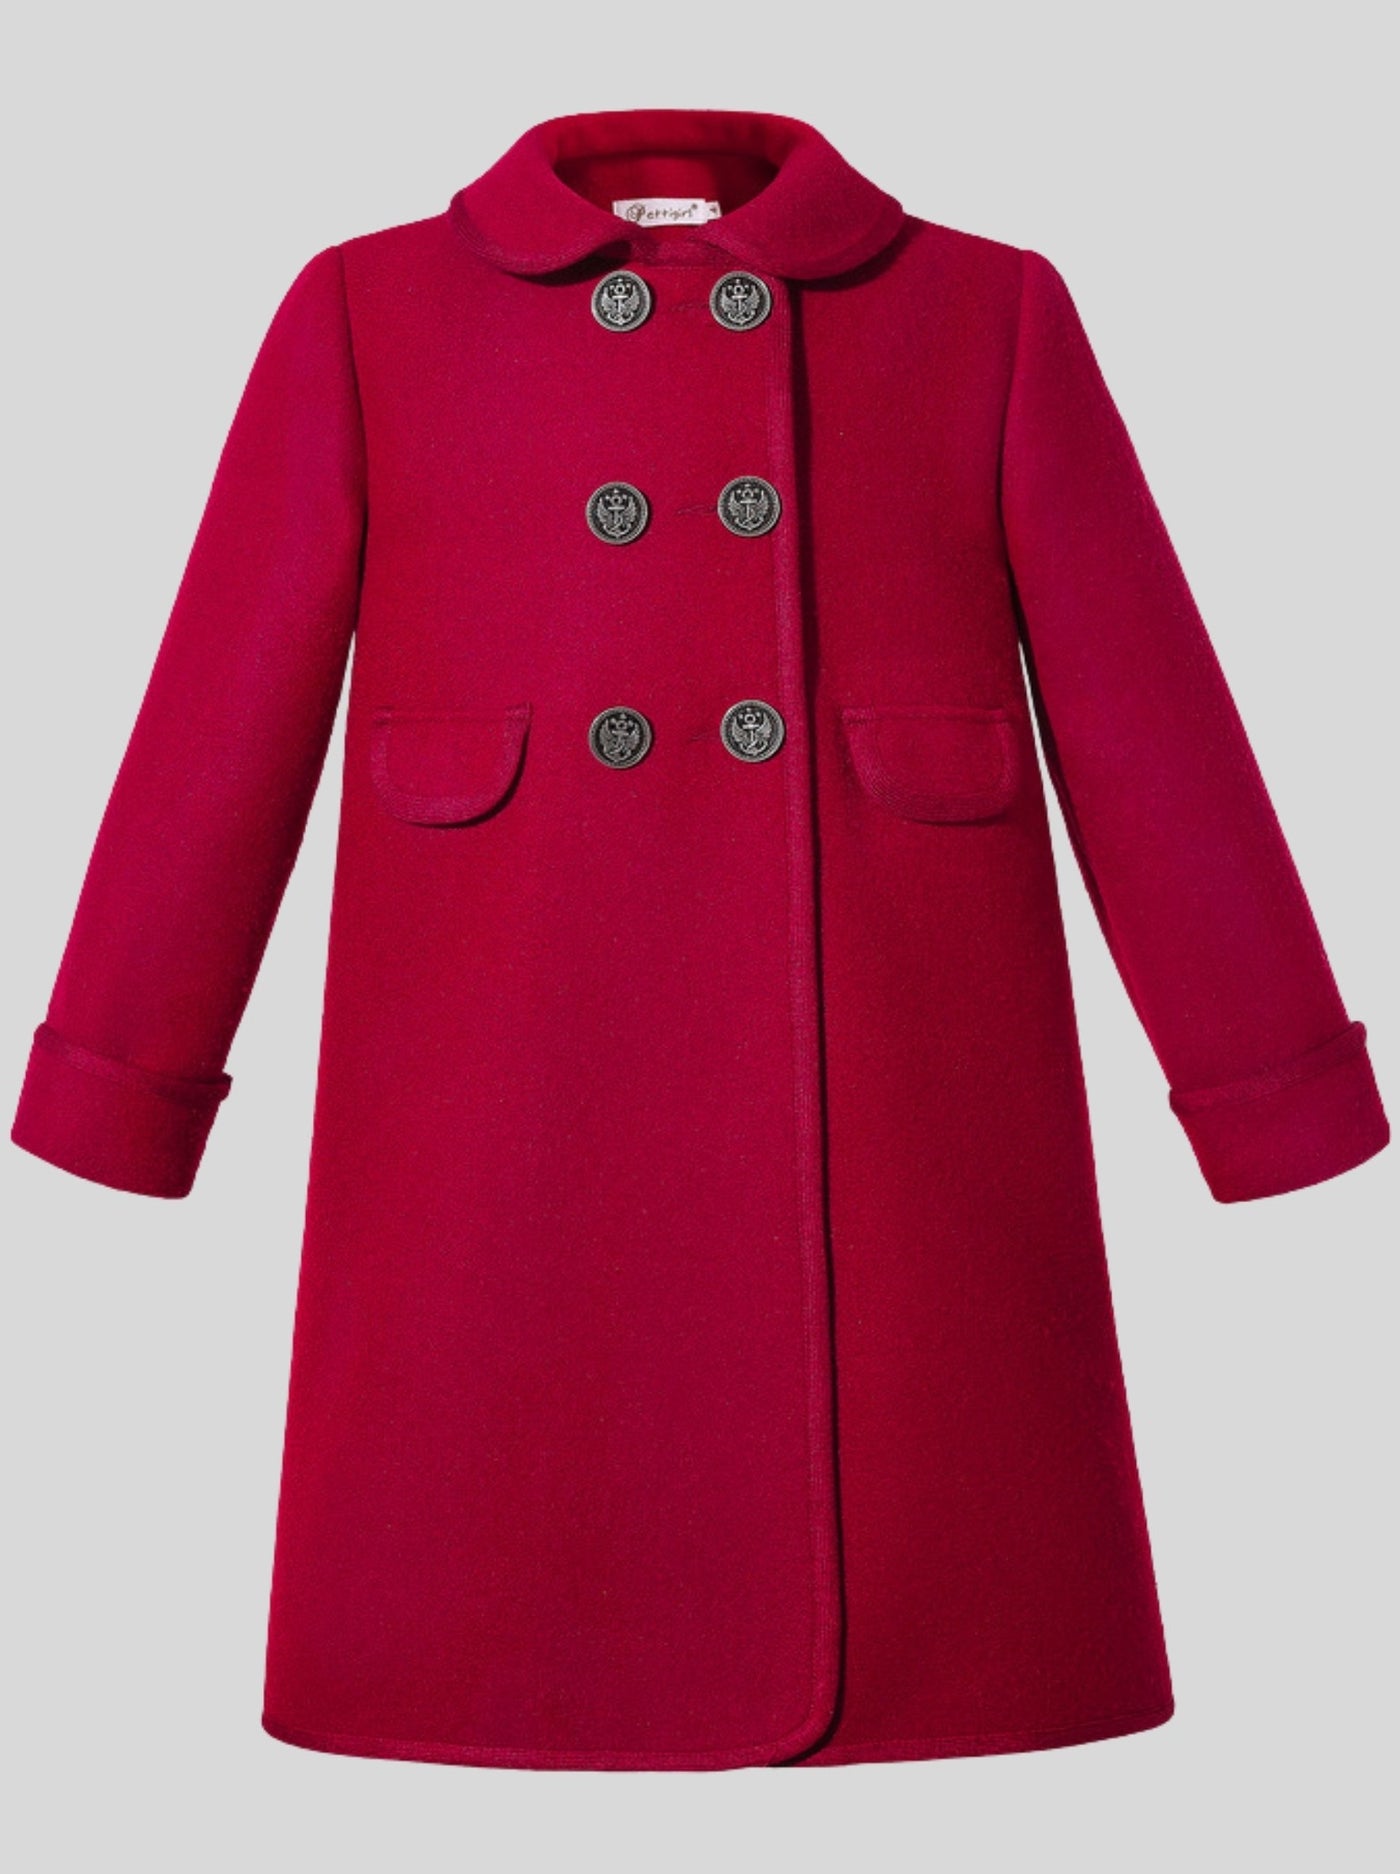 Girls La Parisienne Vintage Style Coat